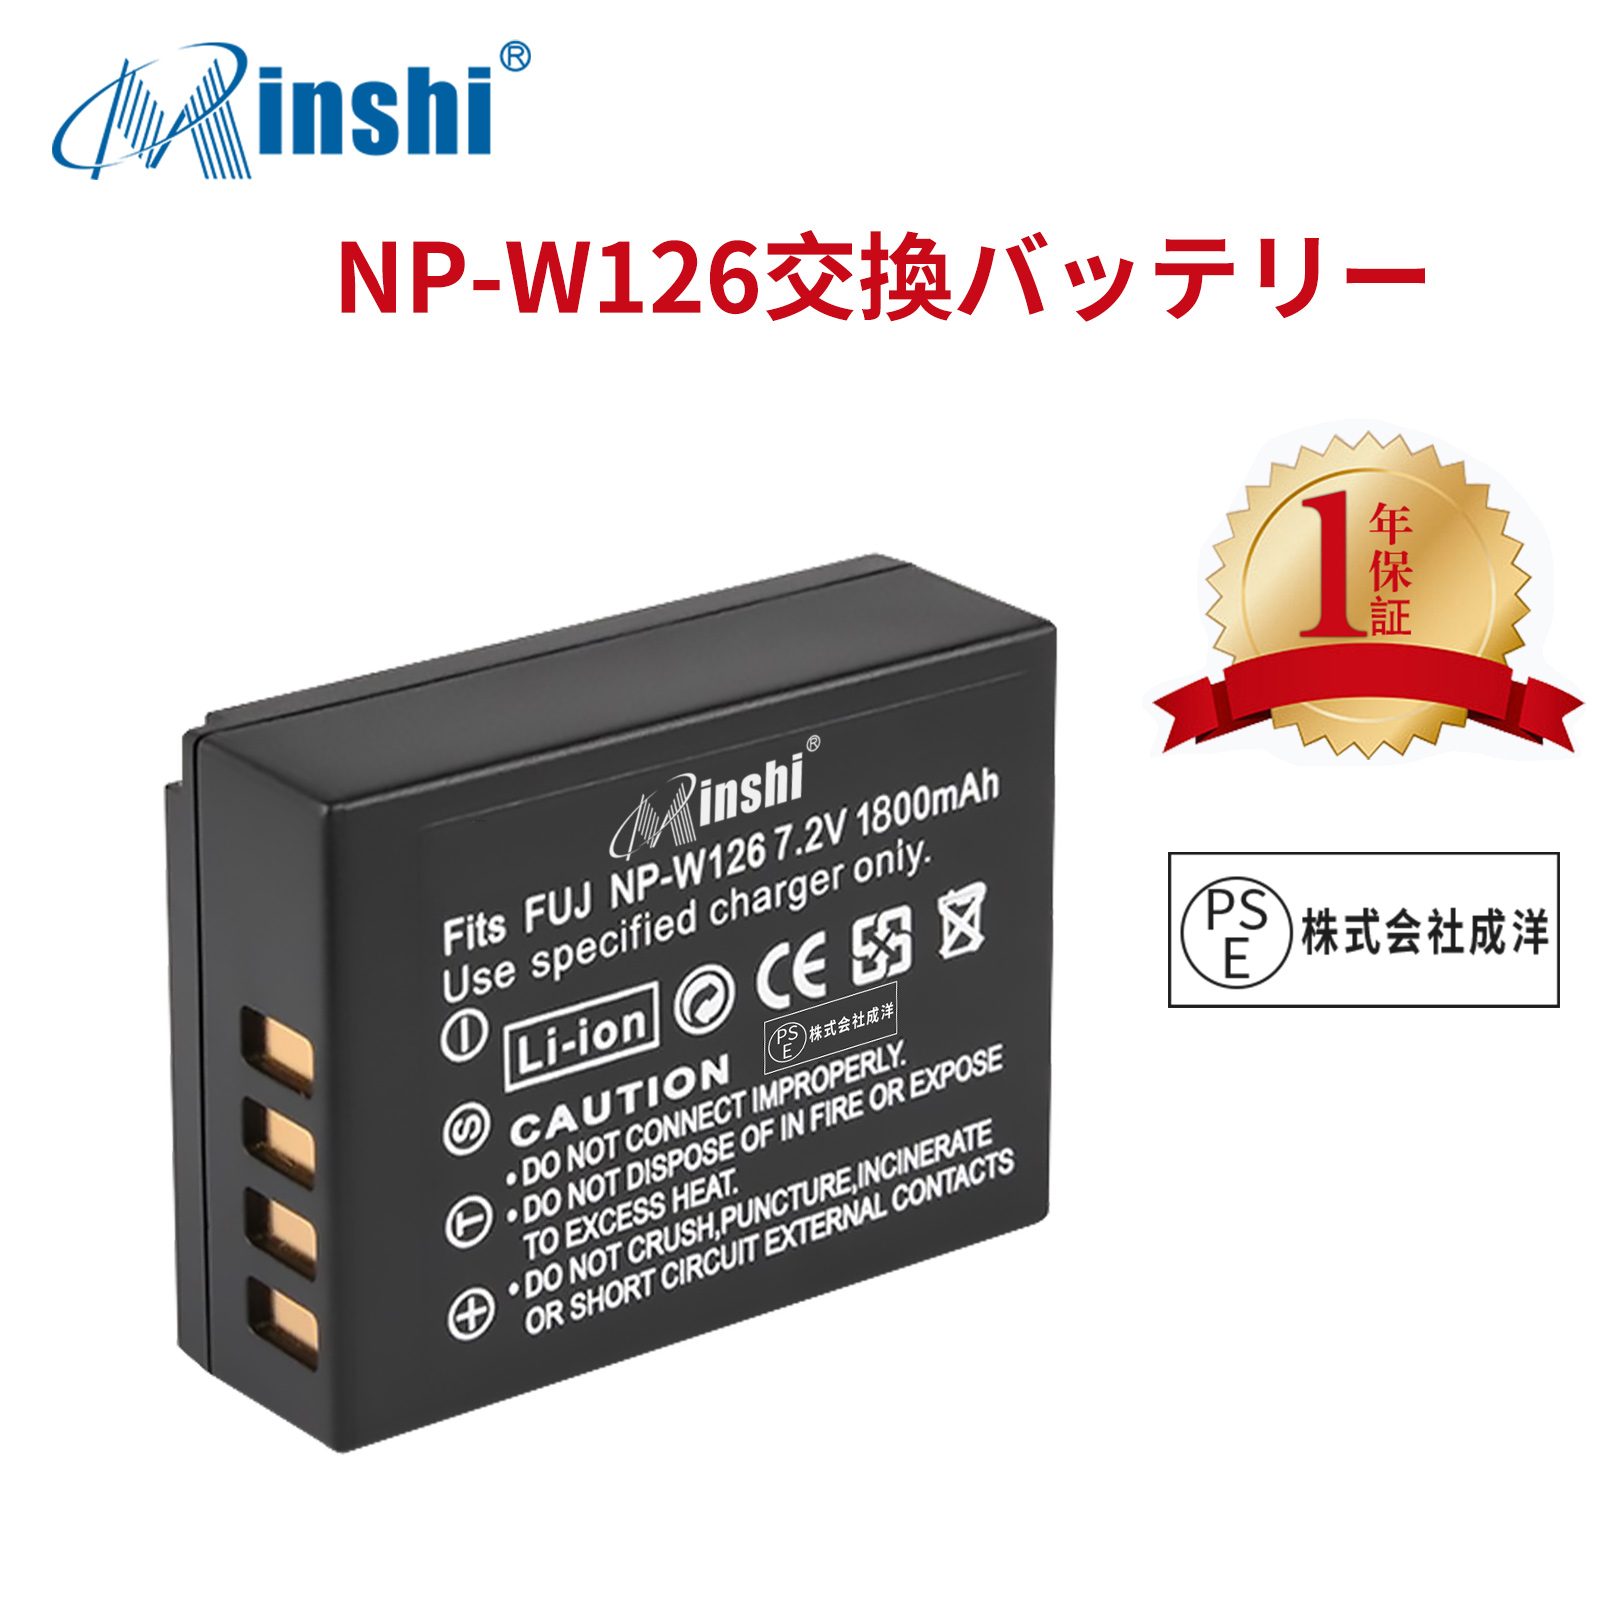 【1年保証】minshi FUJIFILM X-M1 NP-W126S 【1800mAh 7.2V】 NP-W126 NP-W126S高品質 NP-W126S NP-W126互換バッテリー